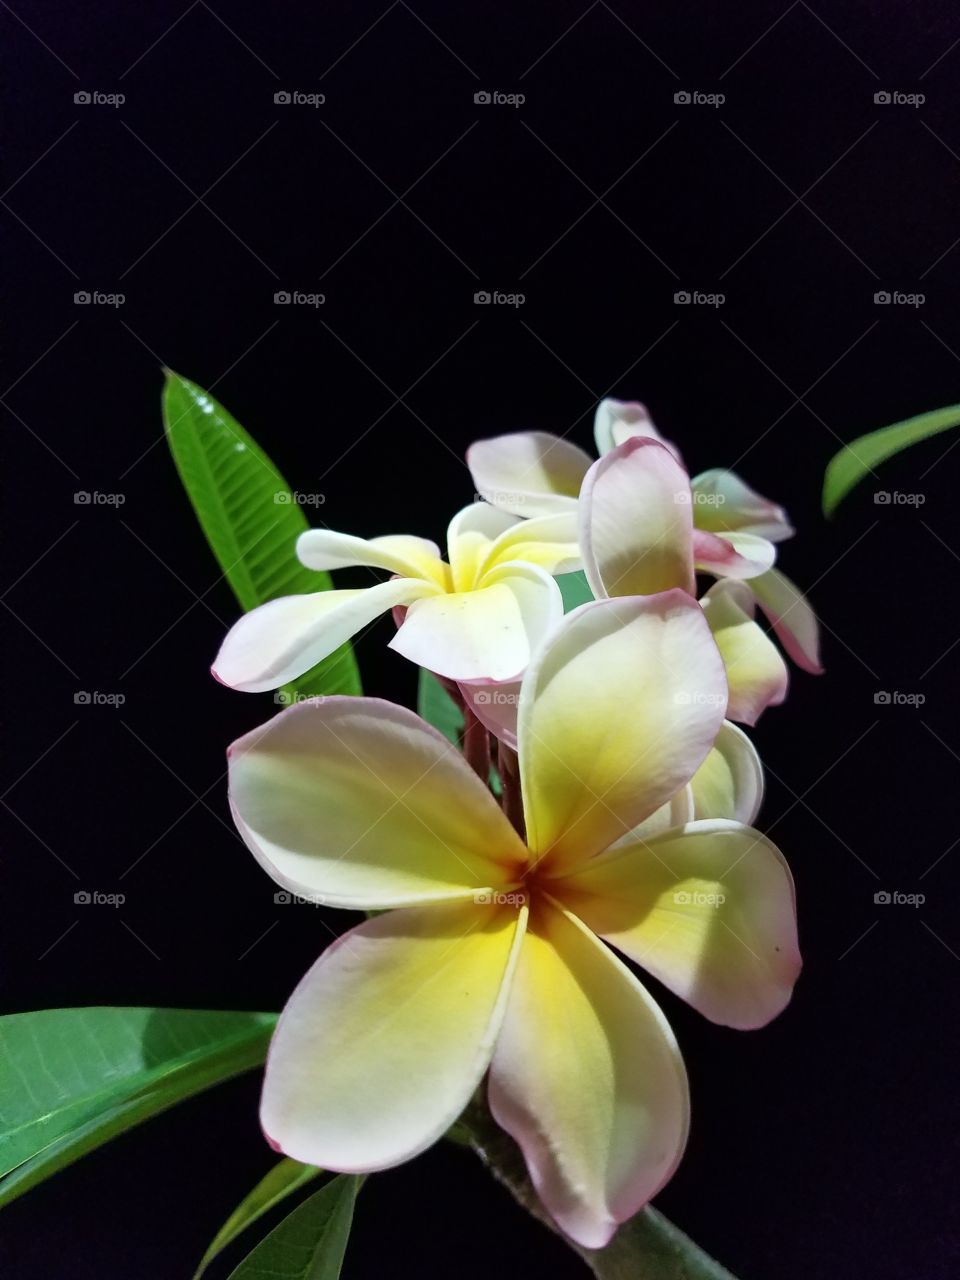 yellow and white Hawaiian lei flower